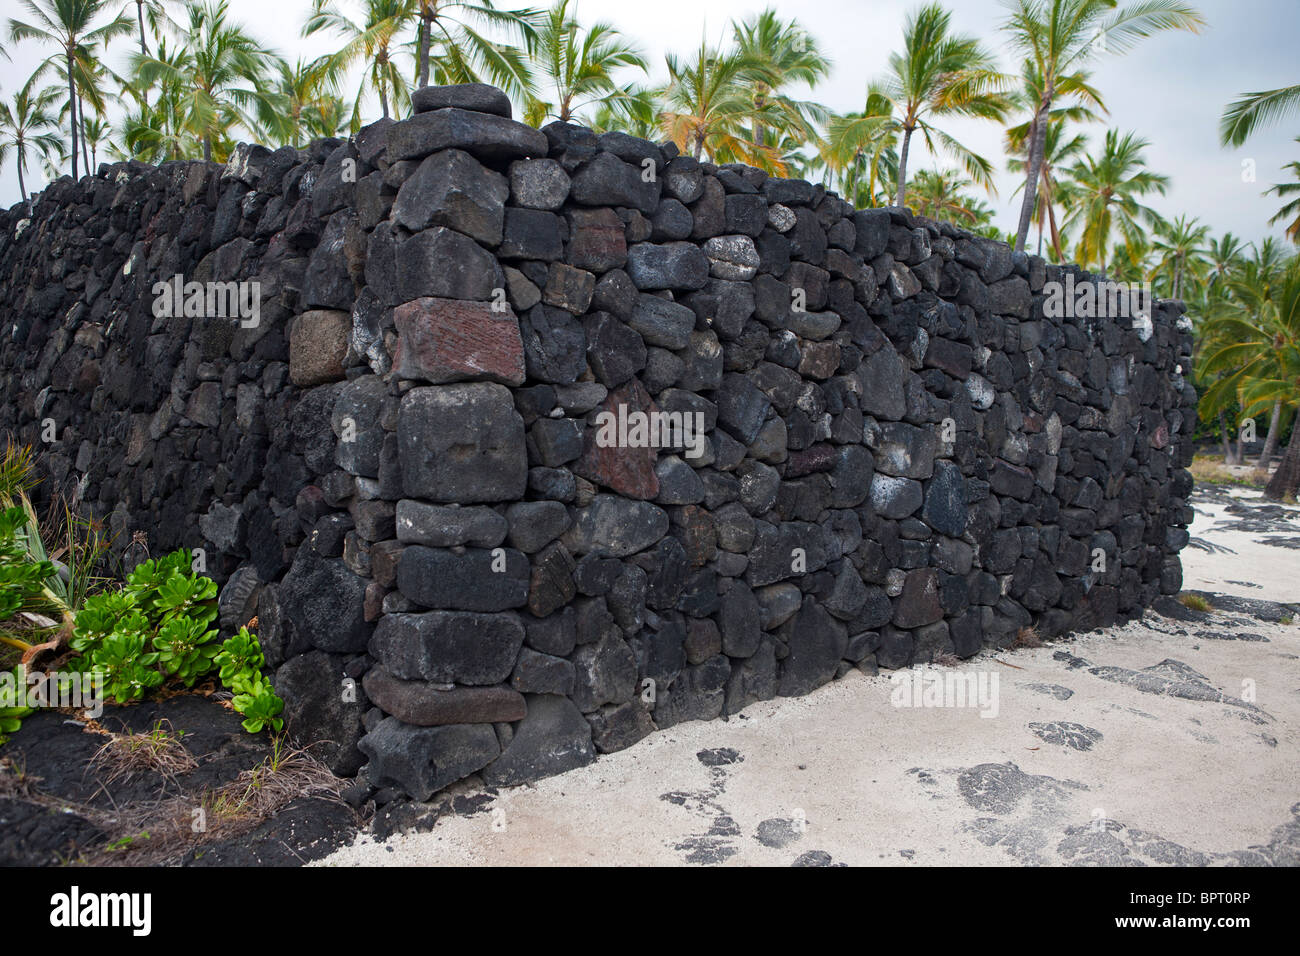 Pared de roca de lava, Pu'uhonua o Honaunau National Historical Park, la Isla Grande de Hawai, Estados Unidos de América Foto de stock